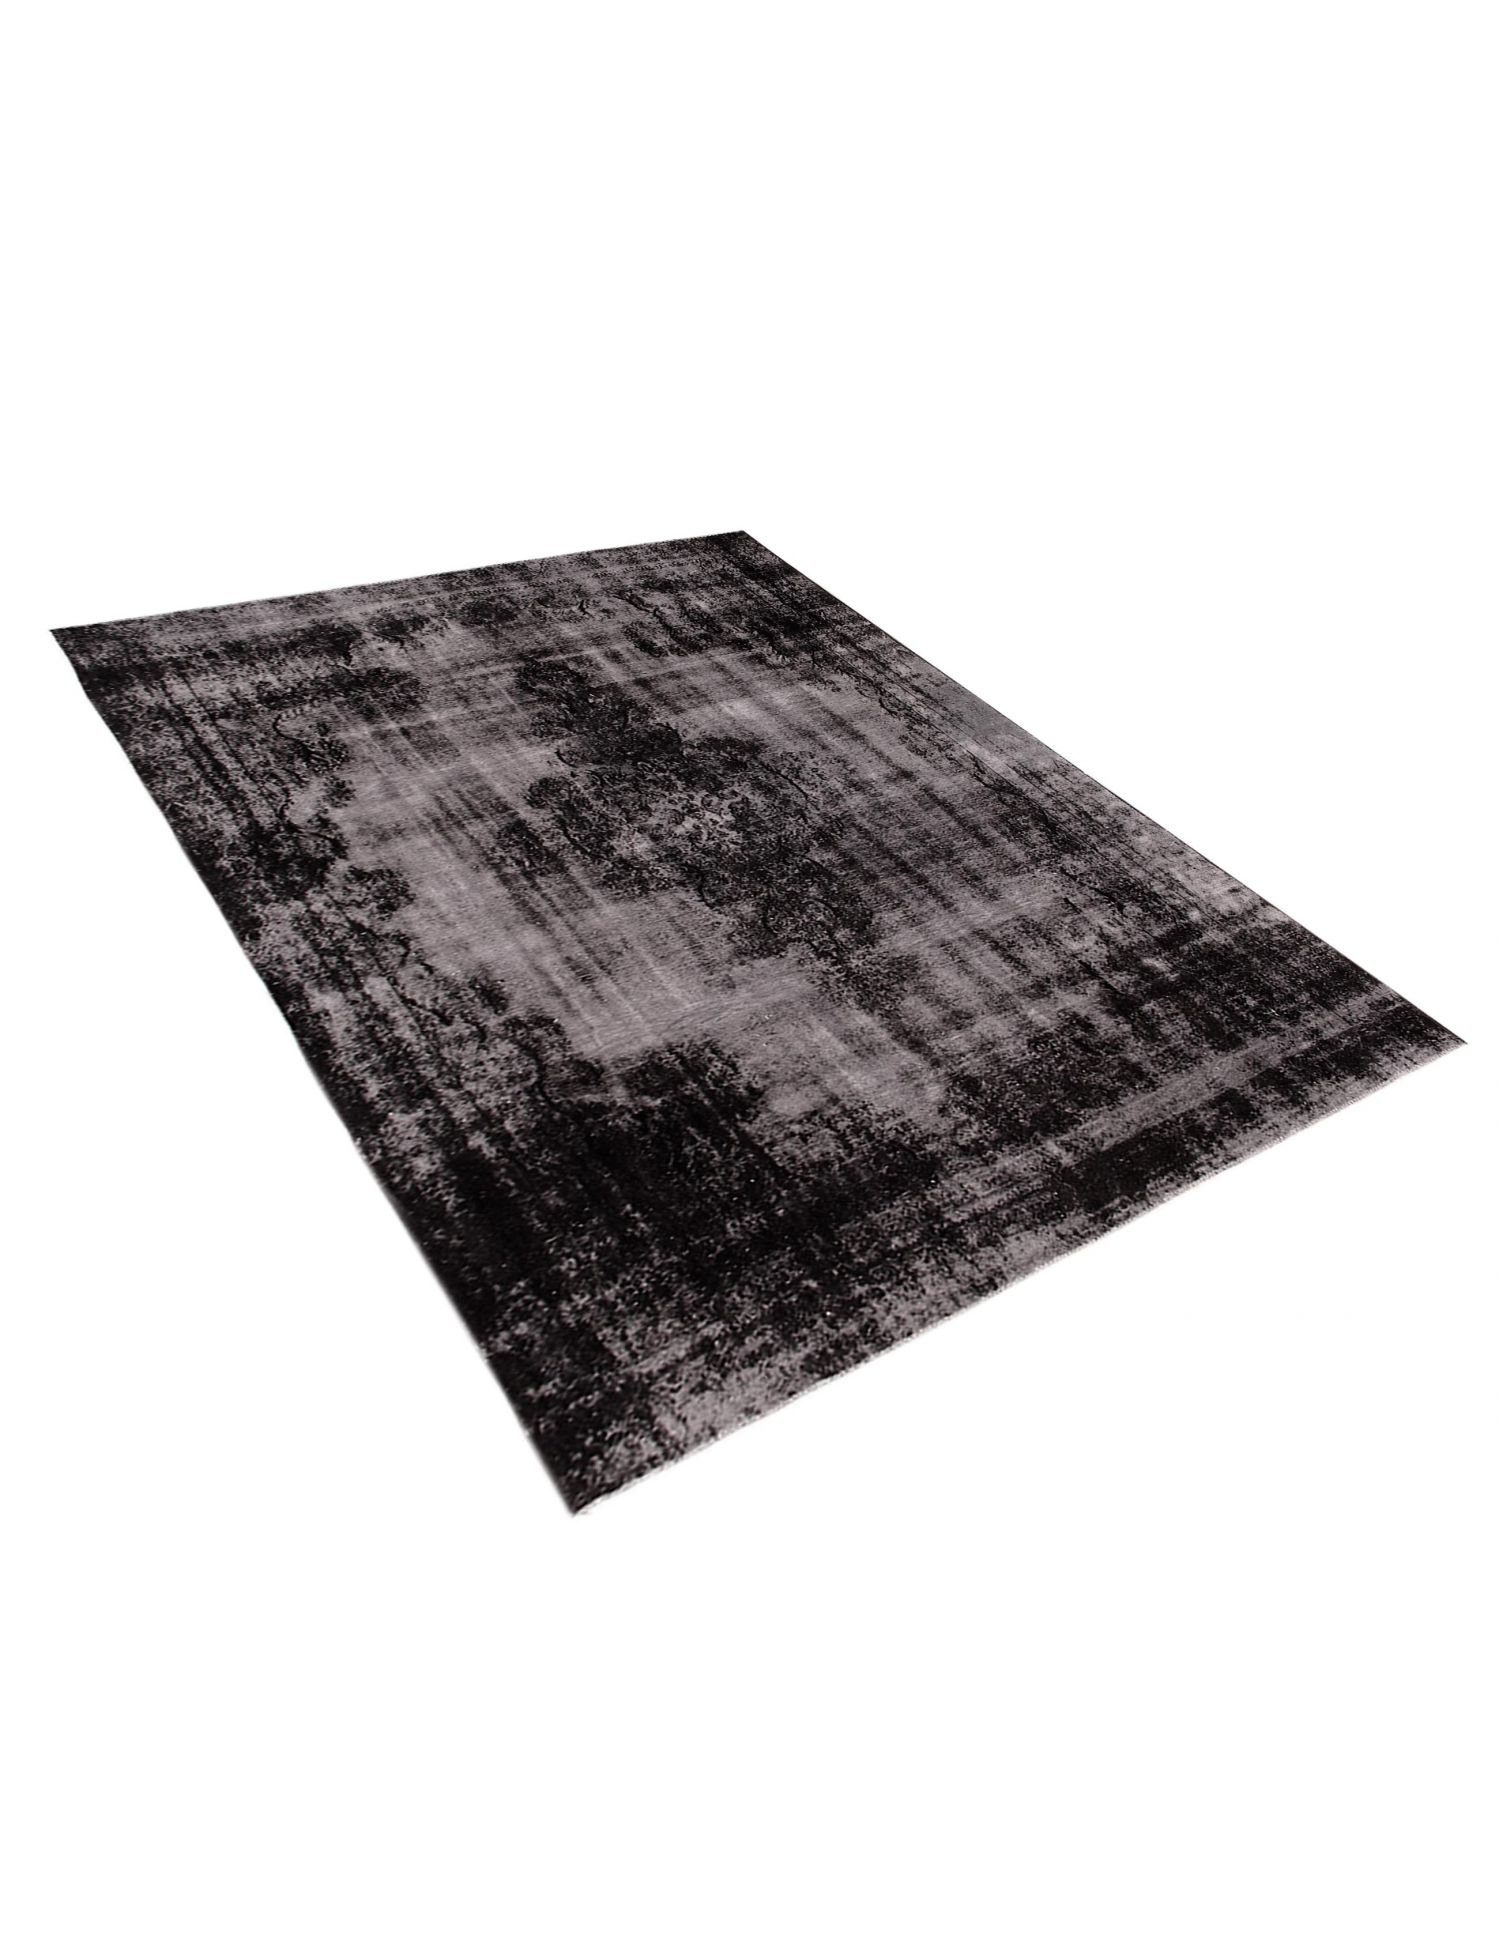 Persian Vintage Carpet  black <br/>355 x 258 cm